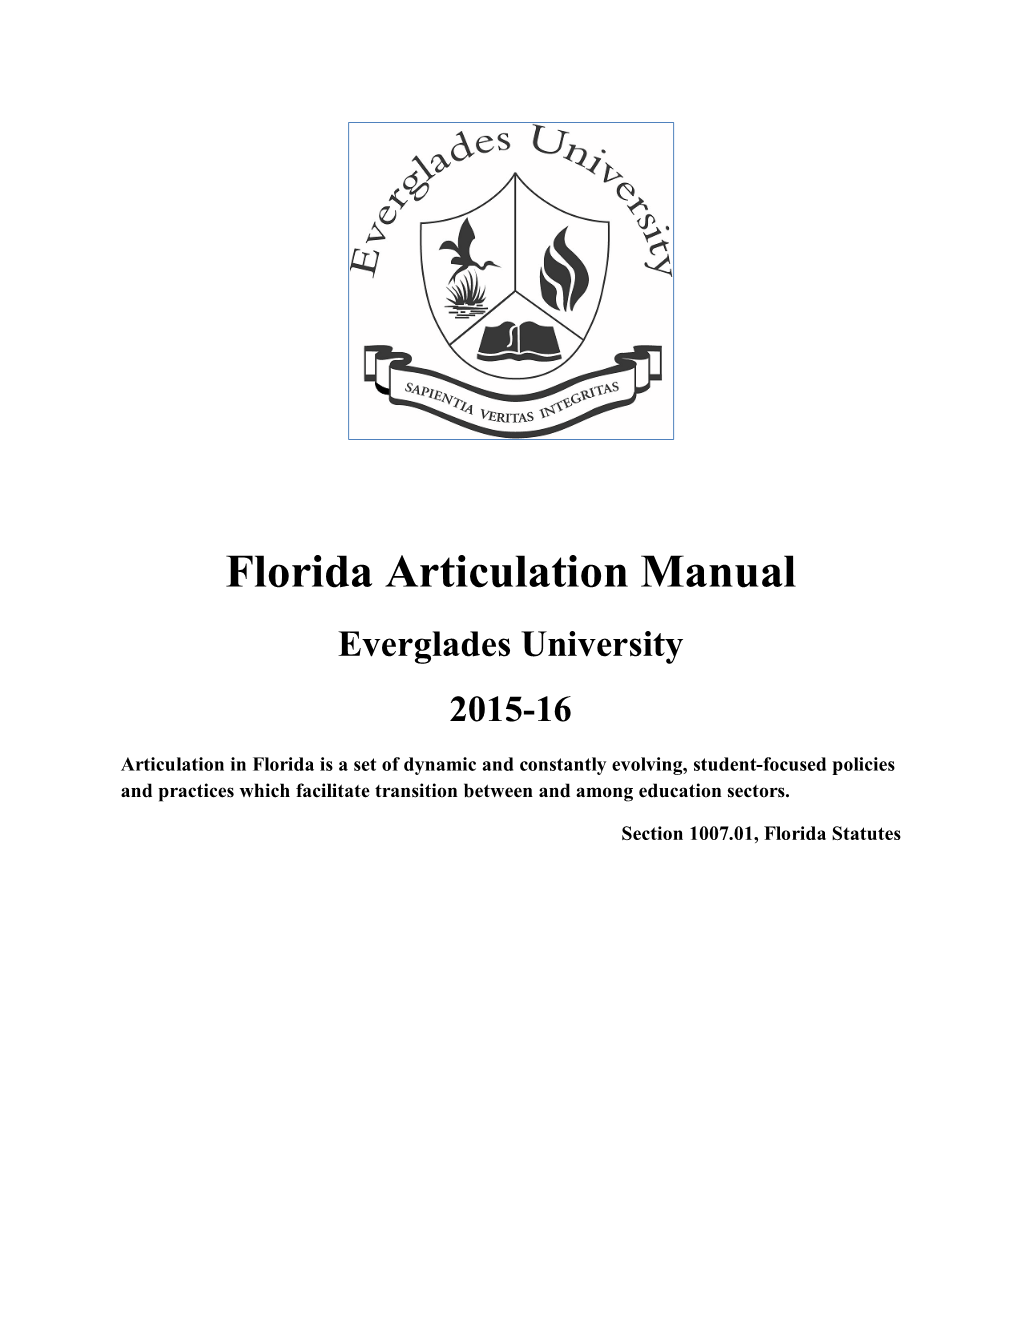 Everglades University 2015-16